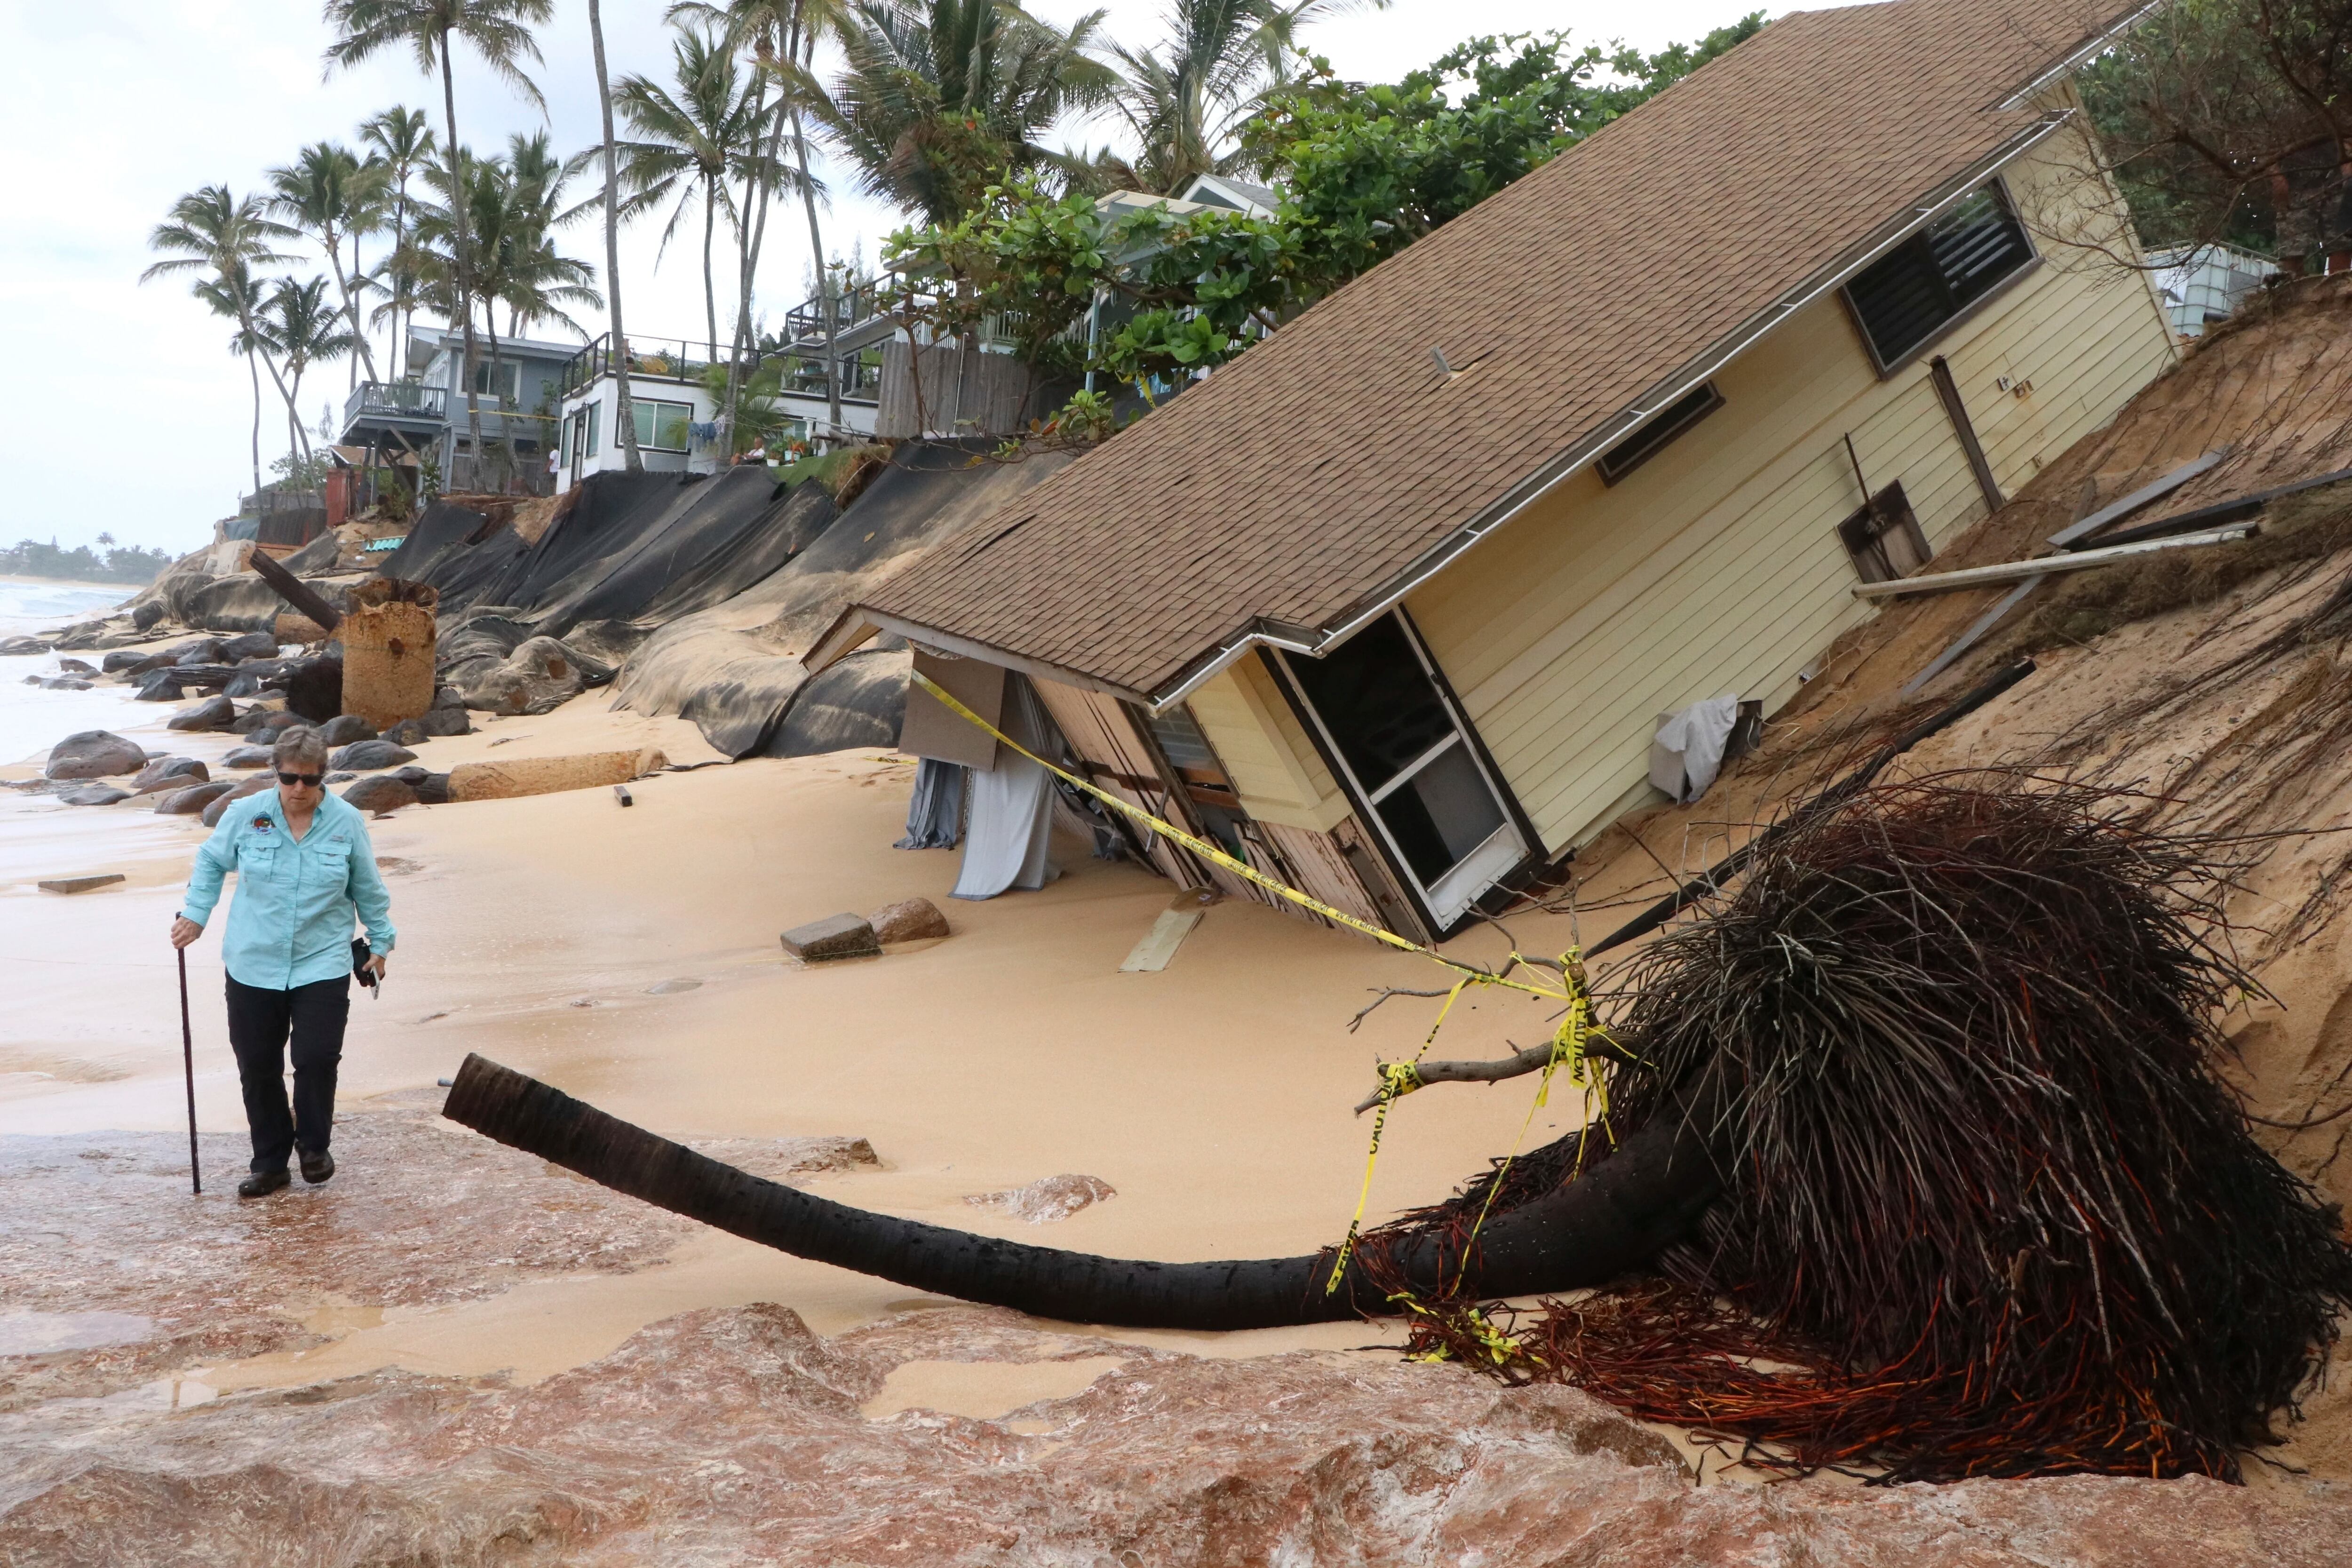 Foto proporcionada por el Departamento de Tierras y Recursos Naturales de Hawai que muestra una casa derrumbada cerca de una playa de Haleiwa, Hawai, el 28 de febrero de 2022. El aumento del nivel del mar y tormentas más intensas están invadiendo las propiedades costeras. Parte de la erosión costera elimina la arena que rodea las fosas sépticas y lleva las aguas residuales hacia el mar. (Dan Dennison/Departamento de Tierras y Recursos Naturales de Hawai vía AP)